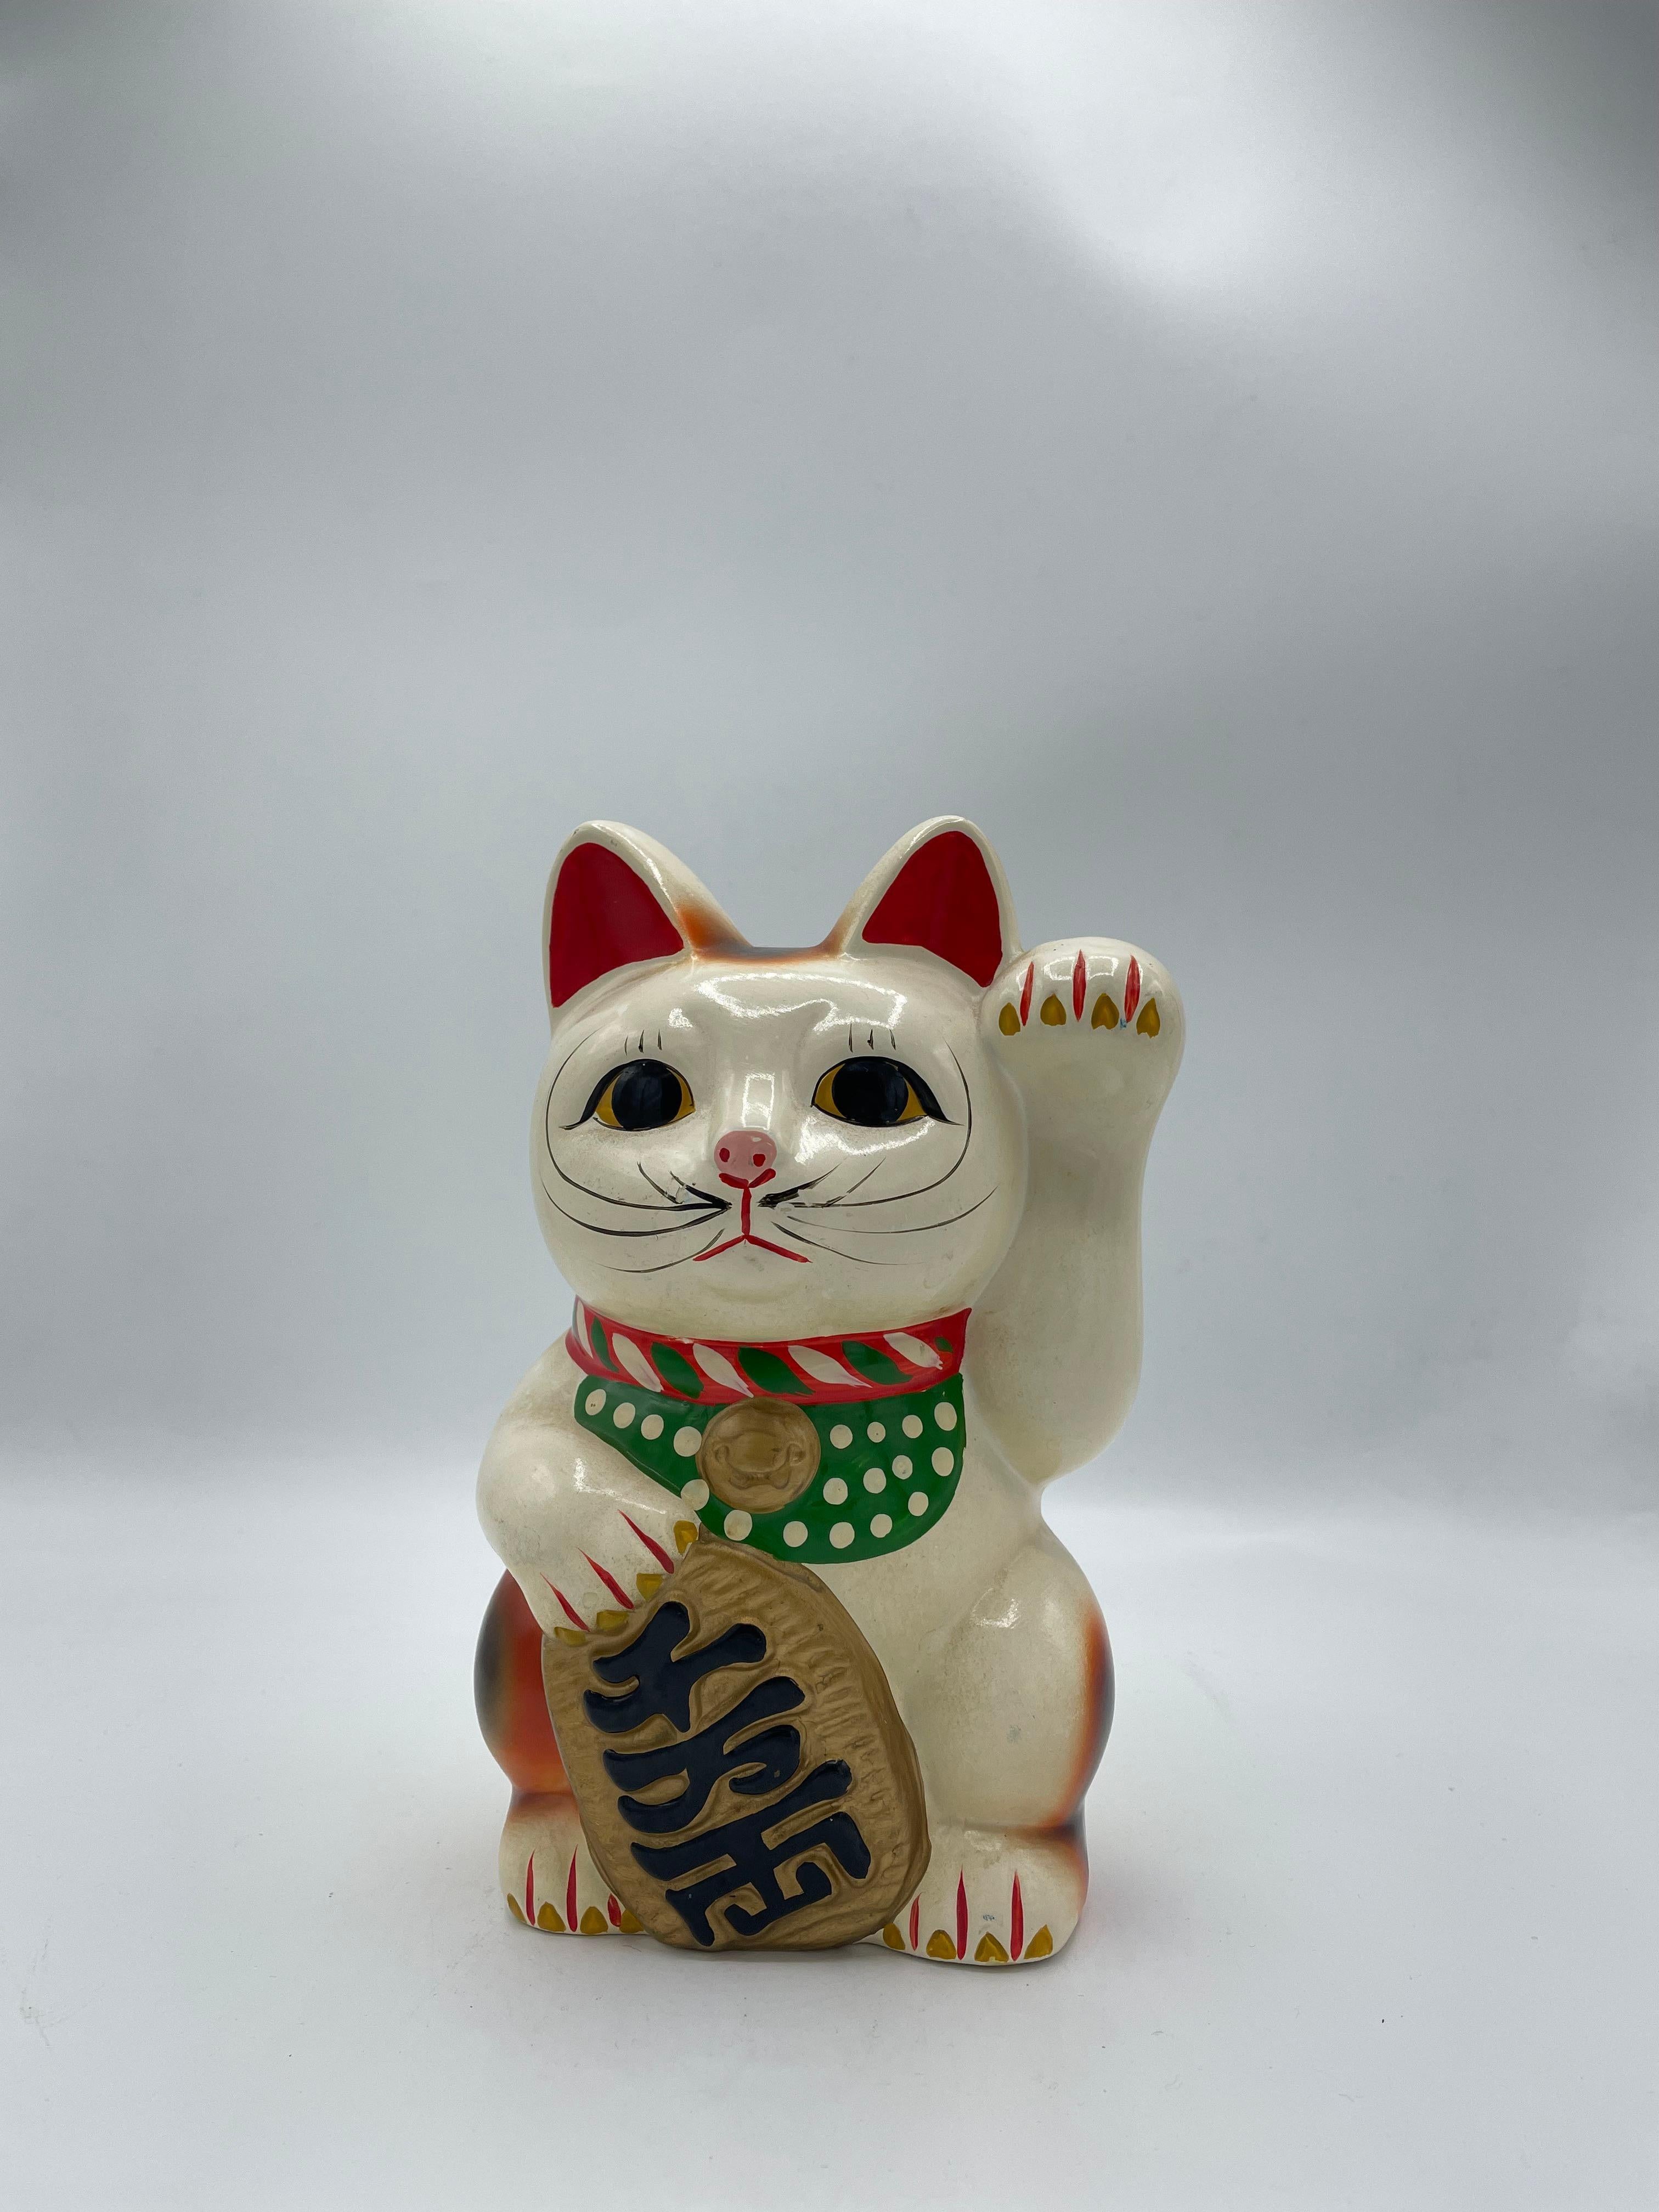 Il s'agit d'une tirelire représentant un chat manekineko. Elle est en poterie et a été fabriquée dans les années 1980, à l'ère Showa.

Le maneki-neko est une figurine japonaise courante dont on pense souvent qu'elle porte chance à son propriétaire.